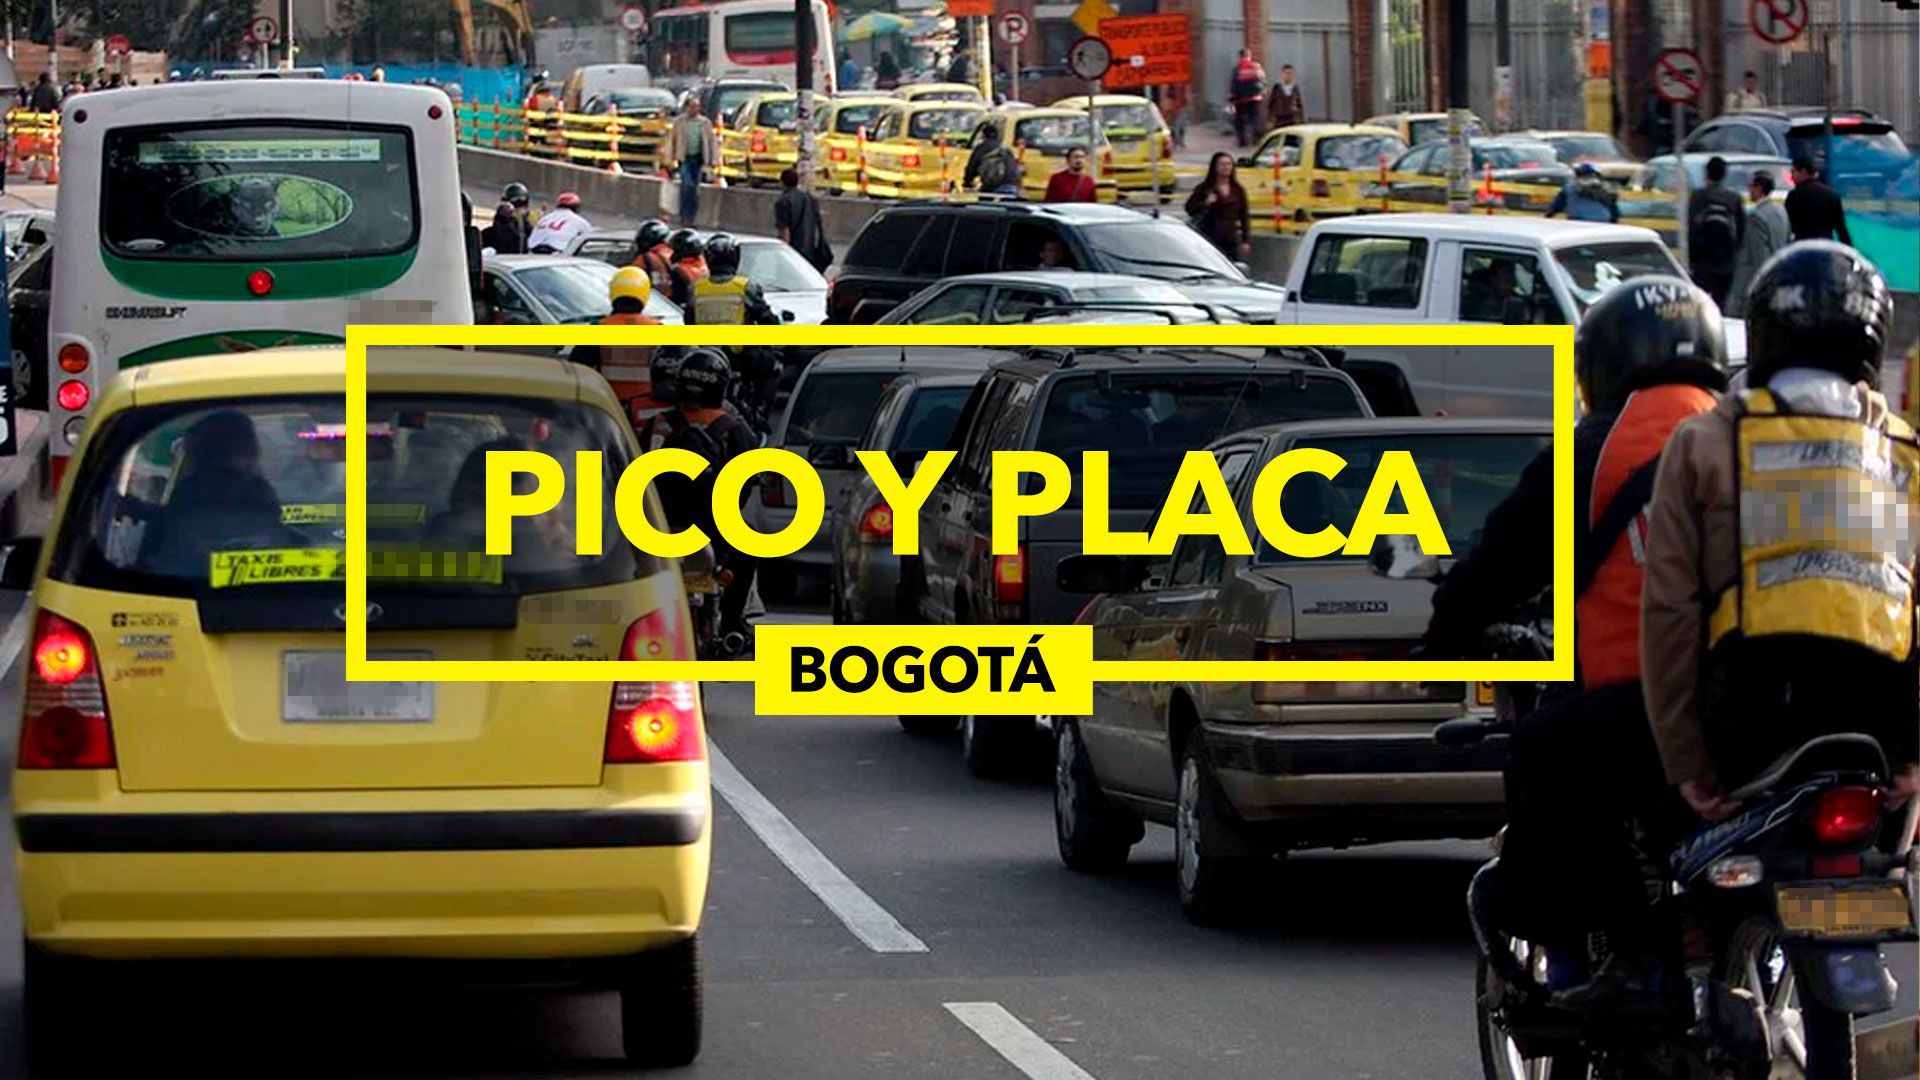 El Pico y Placa no aplica los domingos y en días fesitivos (Infobae/Jovani Pérez)